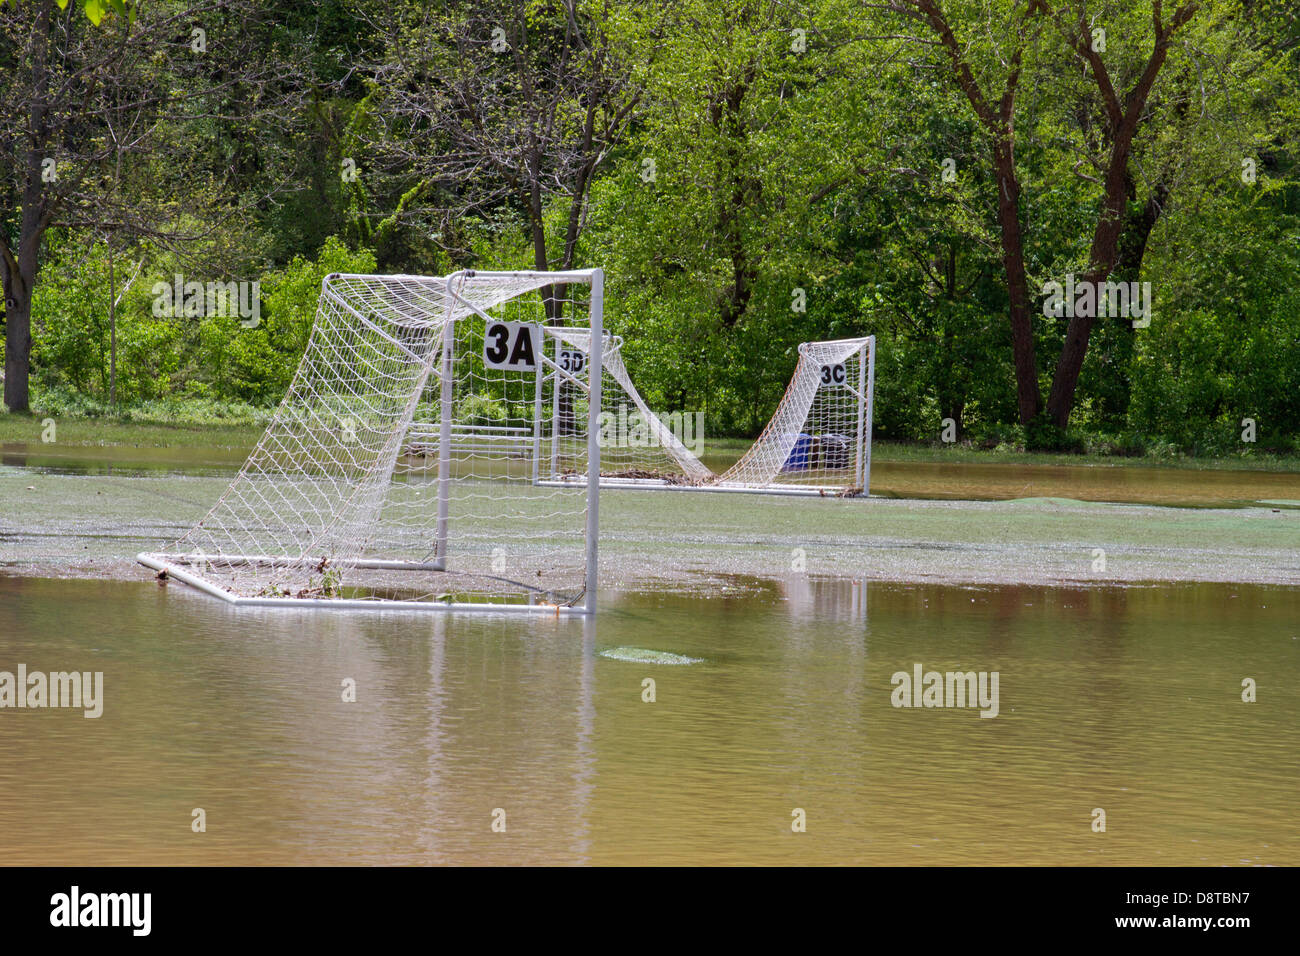 Un campo de fútbol y redes cubiertas por un río inundado Foto de stock